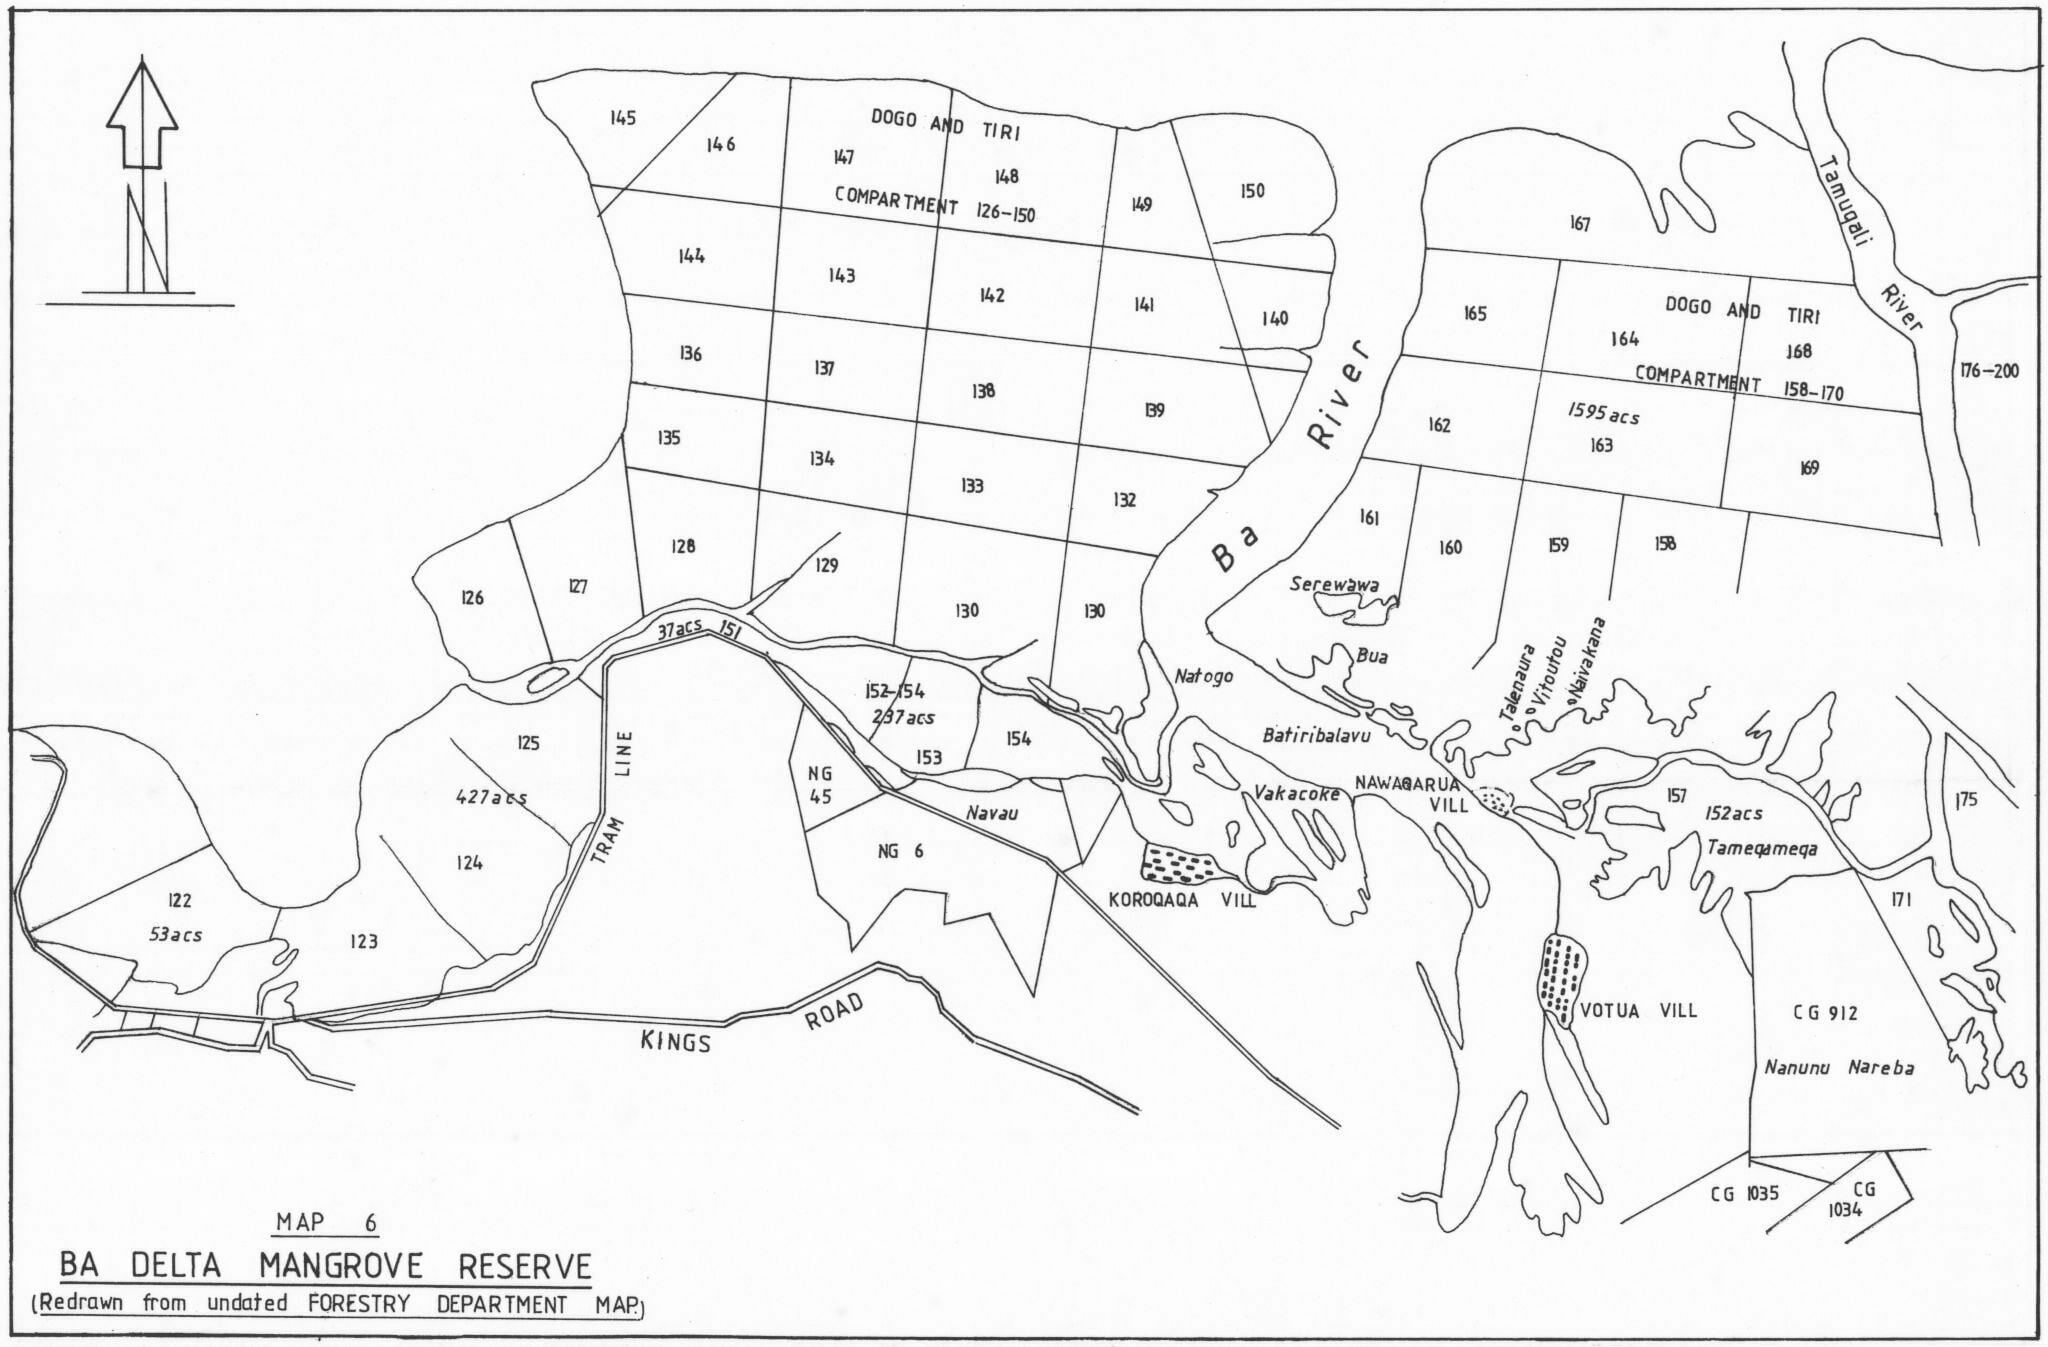 Map-6-Ba-Delta-Mangrove-reserve